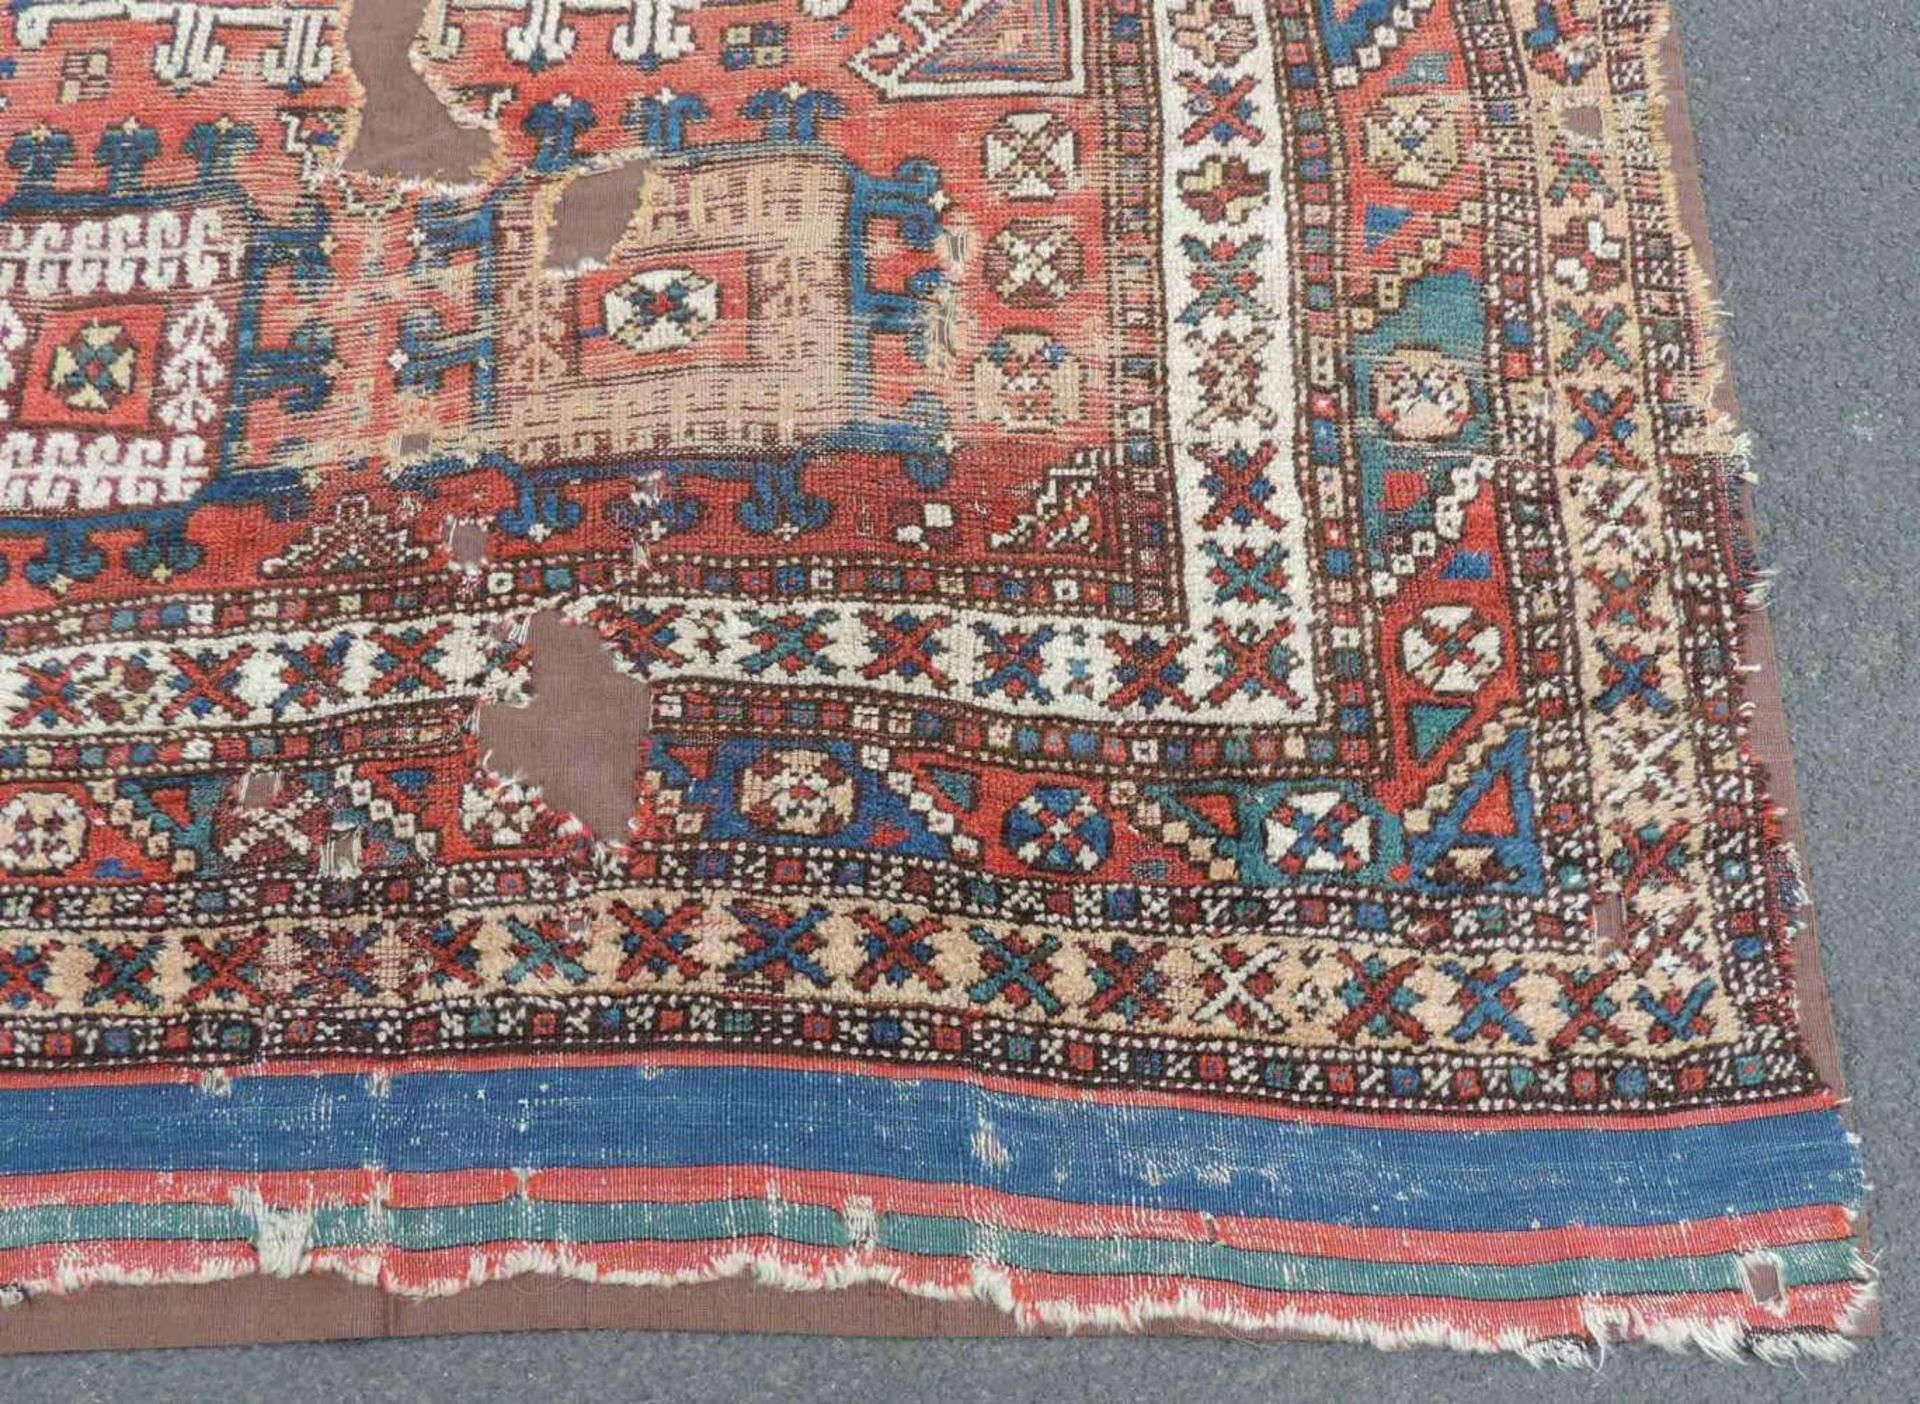 Dorfteppich. West - Anatolien, Türkei. Antik, 18. Jahrhundert. 217 cm x 159 cm. Handgeknüpft. - Image 3 of 7